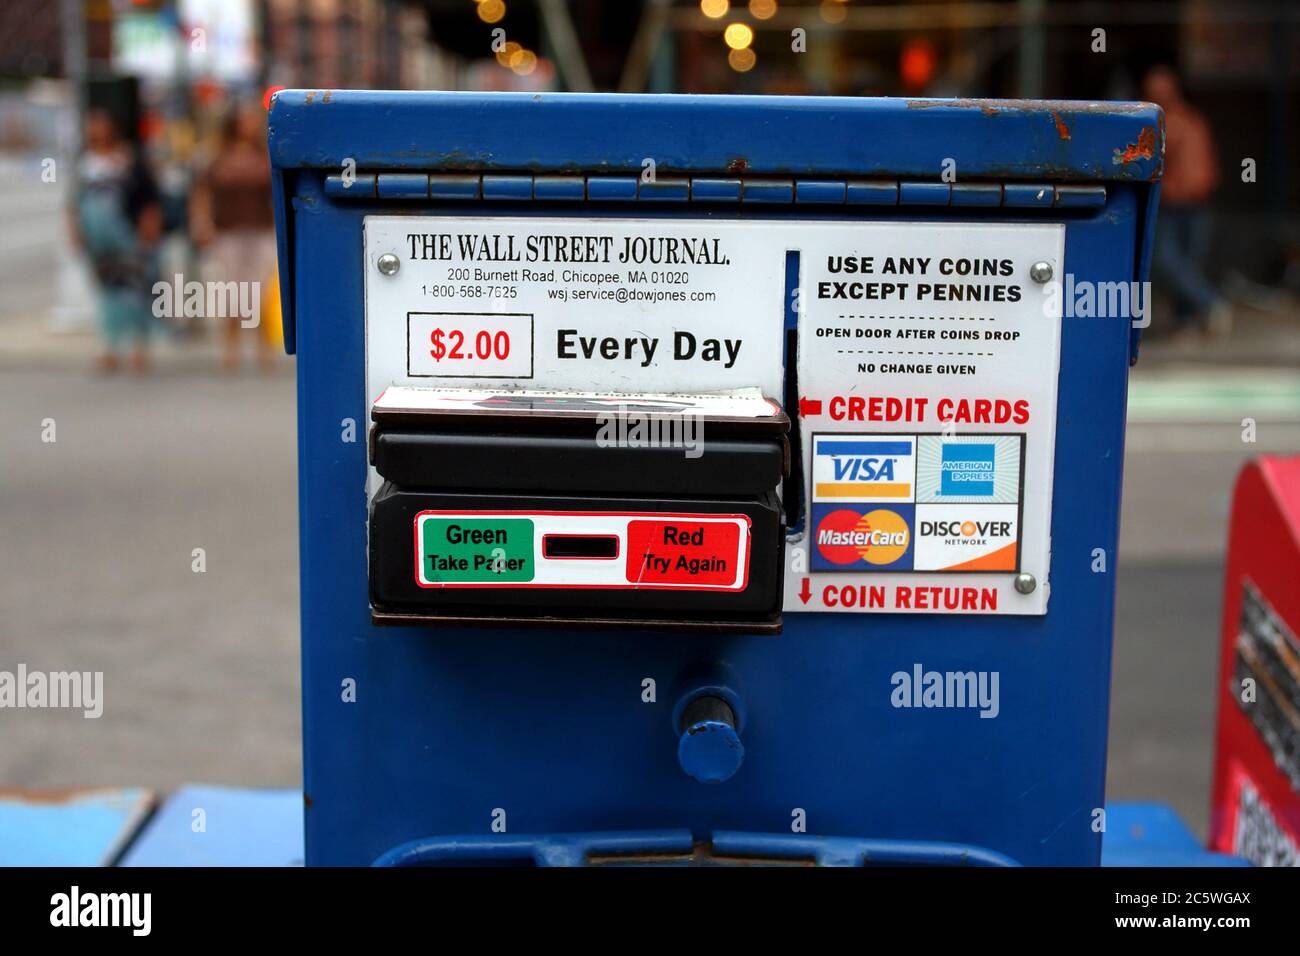 Una caja de prensa en la acera de Wall Street Journal con opción de pago con tarjeta de crédito Foto de stock